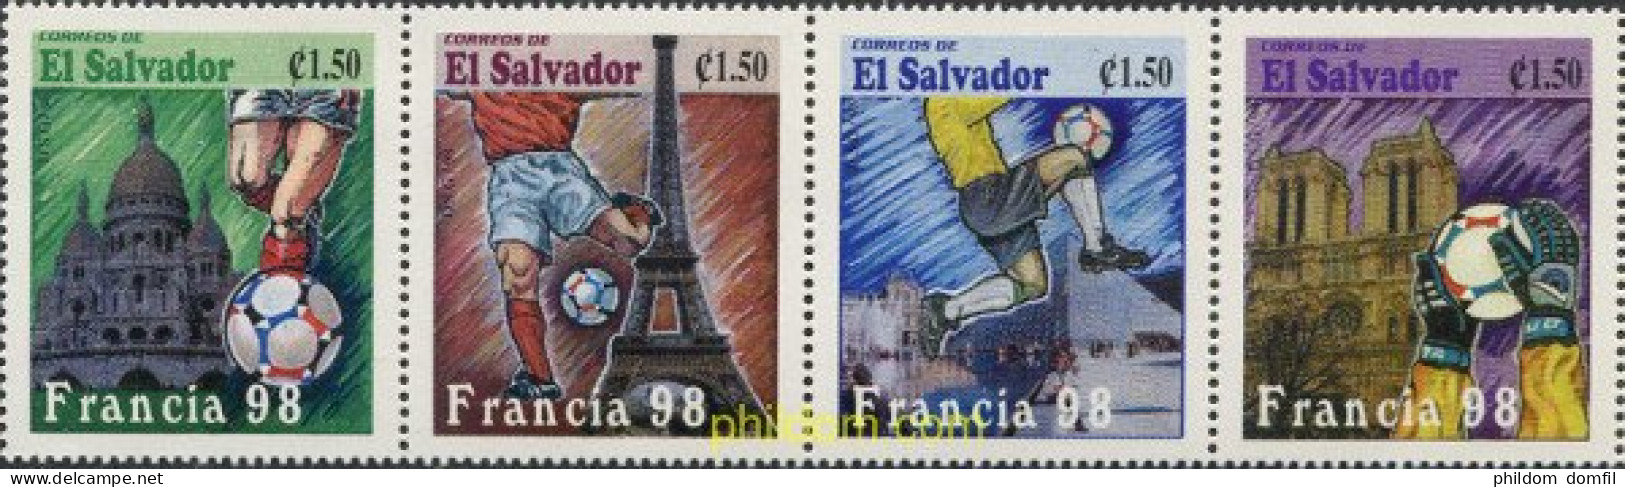 6923 MNH EL SALVADOR 1998 COPA DEL MUNDO DE FUTBOL. FRANCIA-98 - Salvador